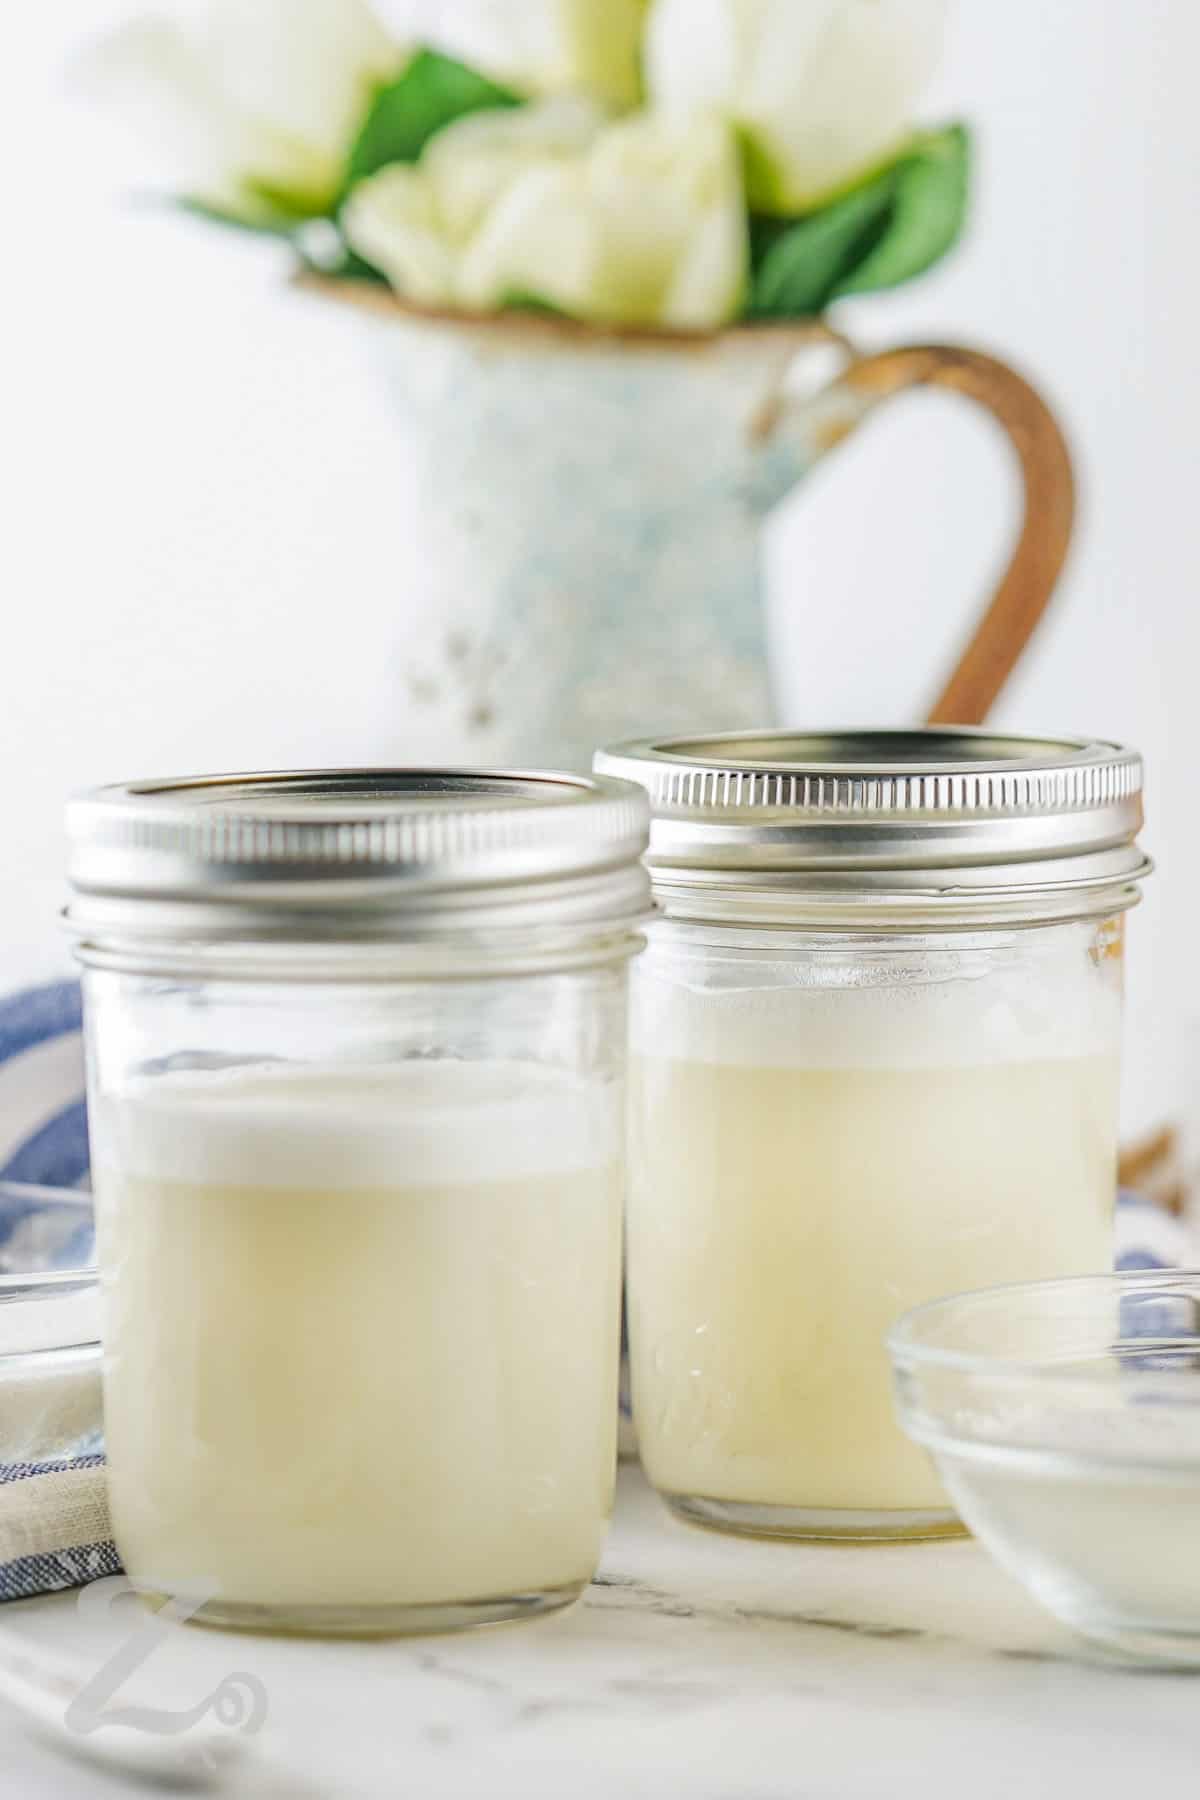 two jars of prepared sweetened condensed milk